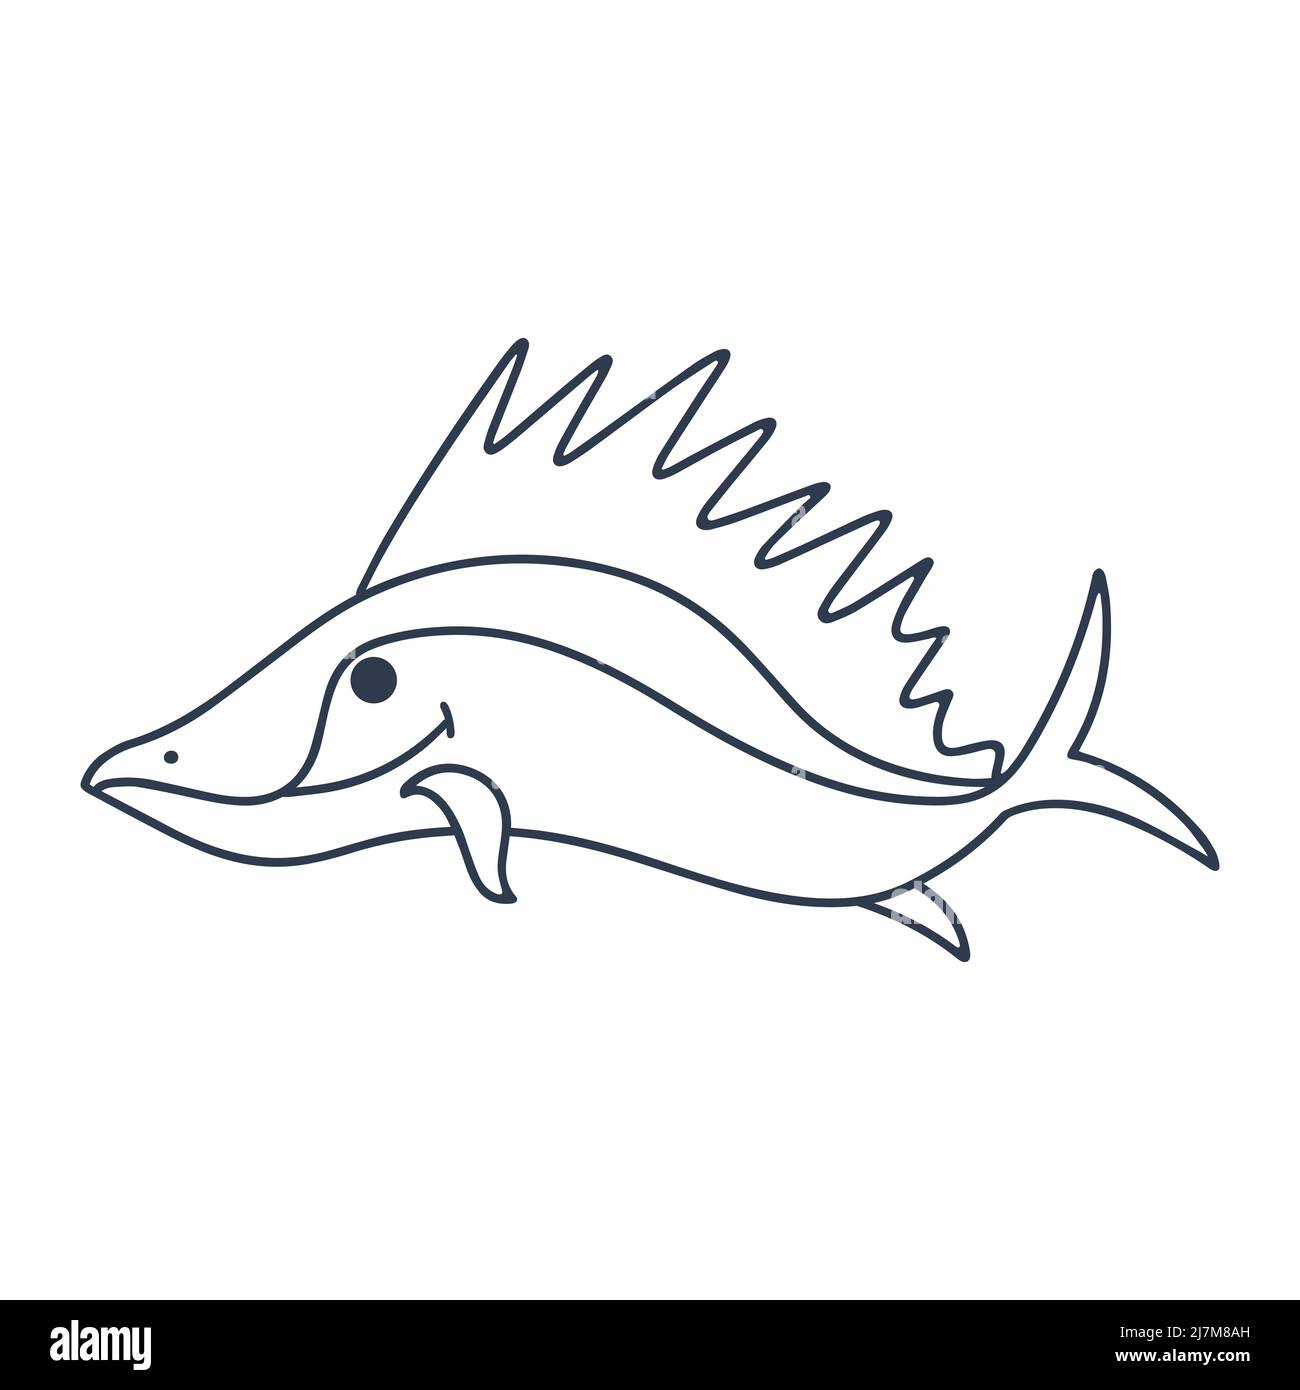 Meeresfisch-Raubtier mit großer Flossenvektor-Doodle-Illustration. Silhouette von Unterwasser-Charakter. Skizzieren Zeichnung Ozeanfische isoliert Stock Vektor